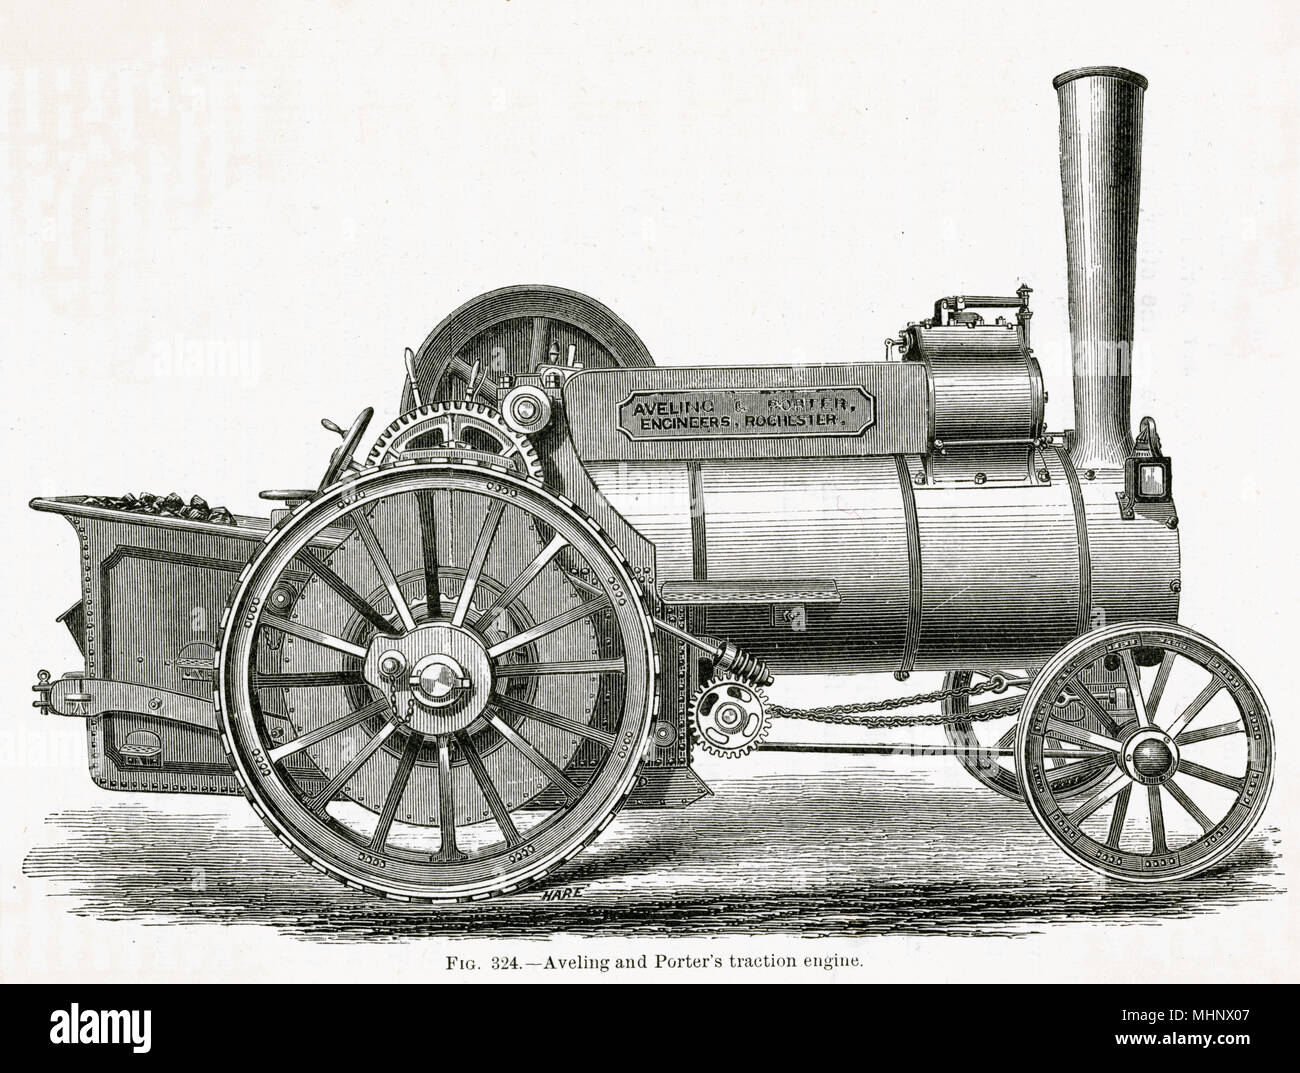 Aveling et Porter a été un moteur de l'agriculture britannique et rouleau compresseur fabricant, devenir le plus grand fabricant de rouleaux à vapeur dans le monde entier. Date : 1877 Banque D'Images